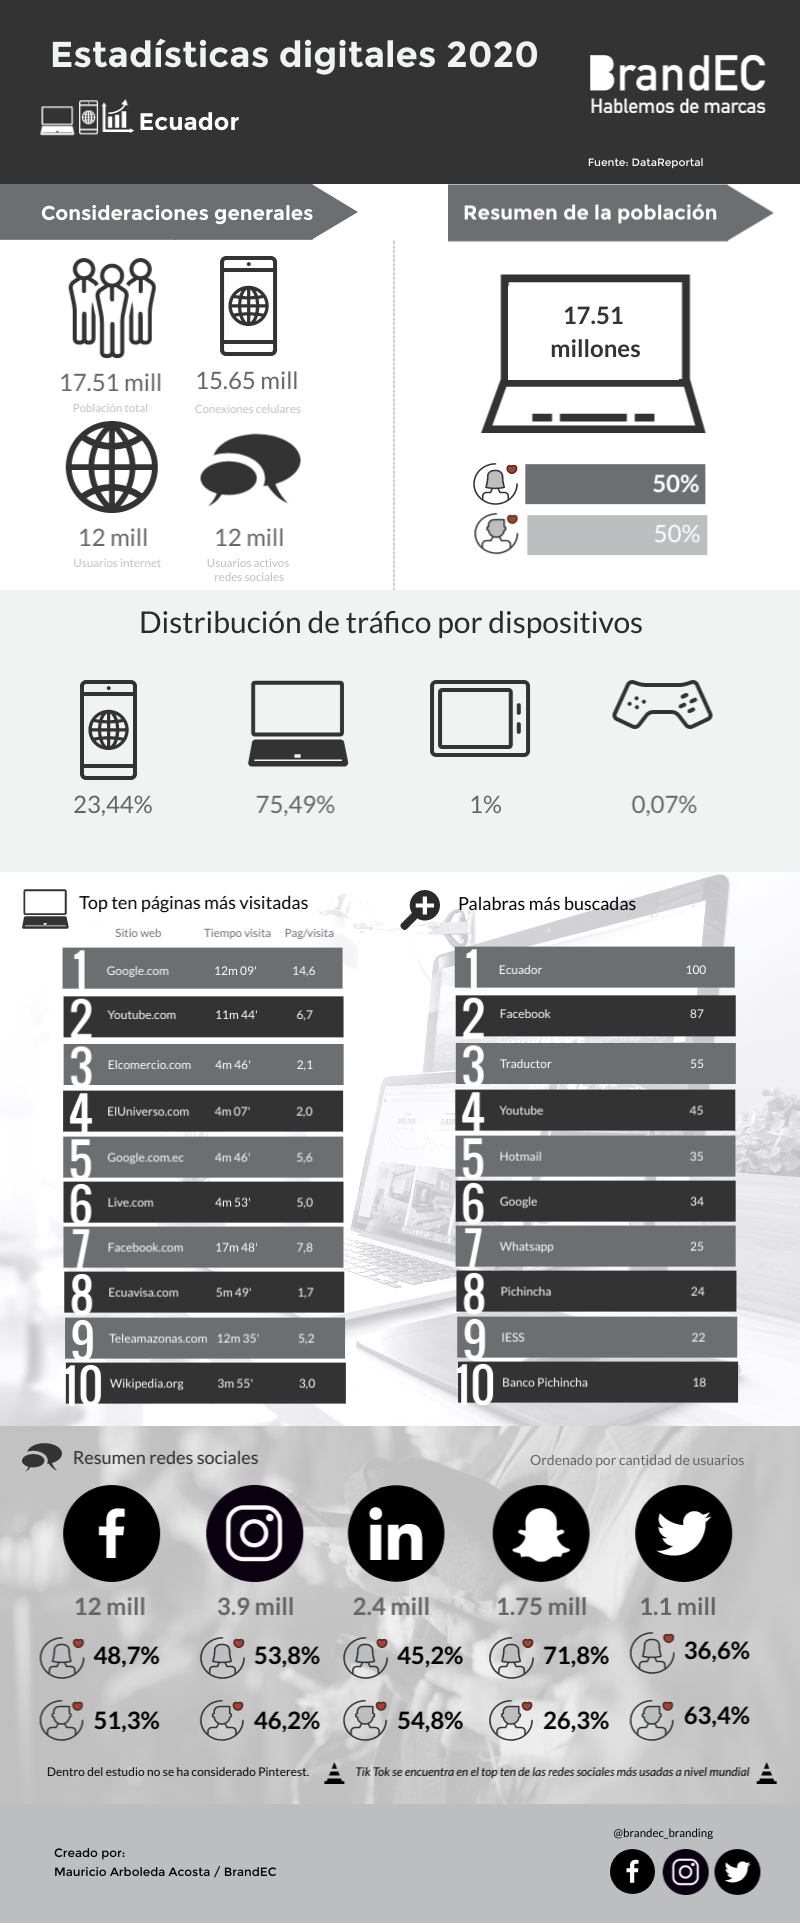 Infografia Estadisticas Digitales Ecuador 2020